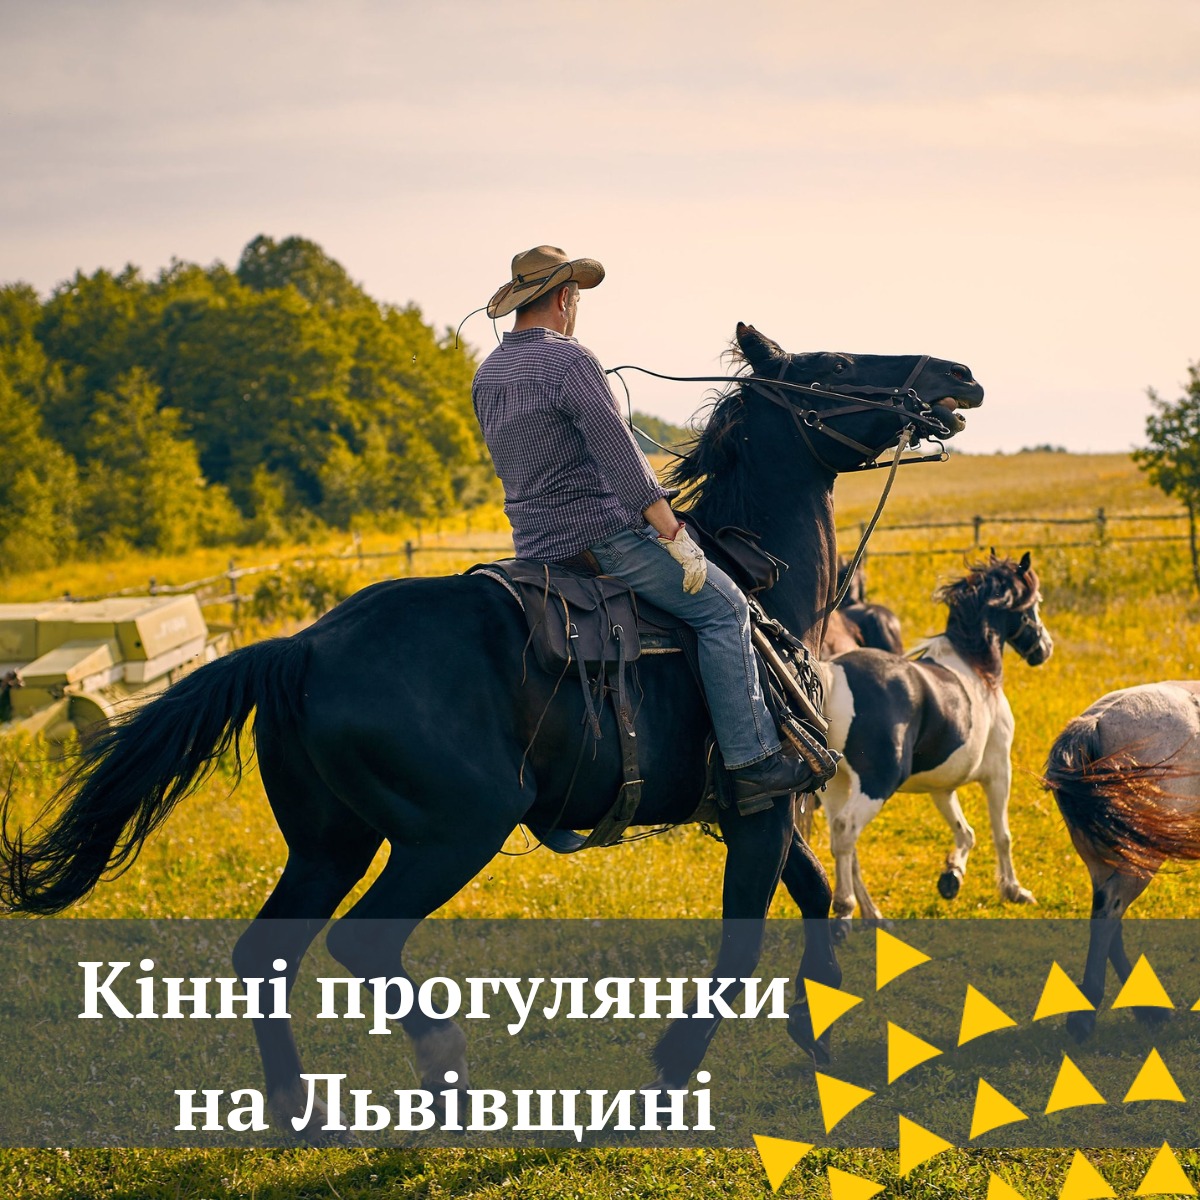 Прогулянки на конях неподалік Львова — терапія та відпочинок